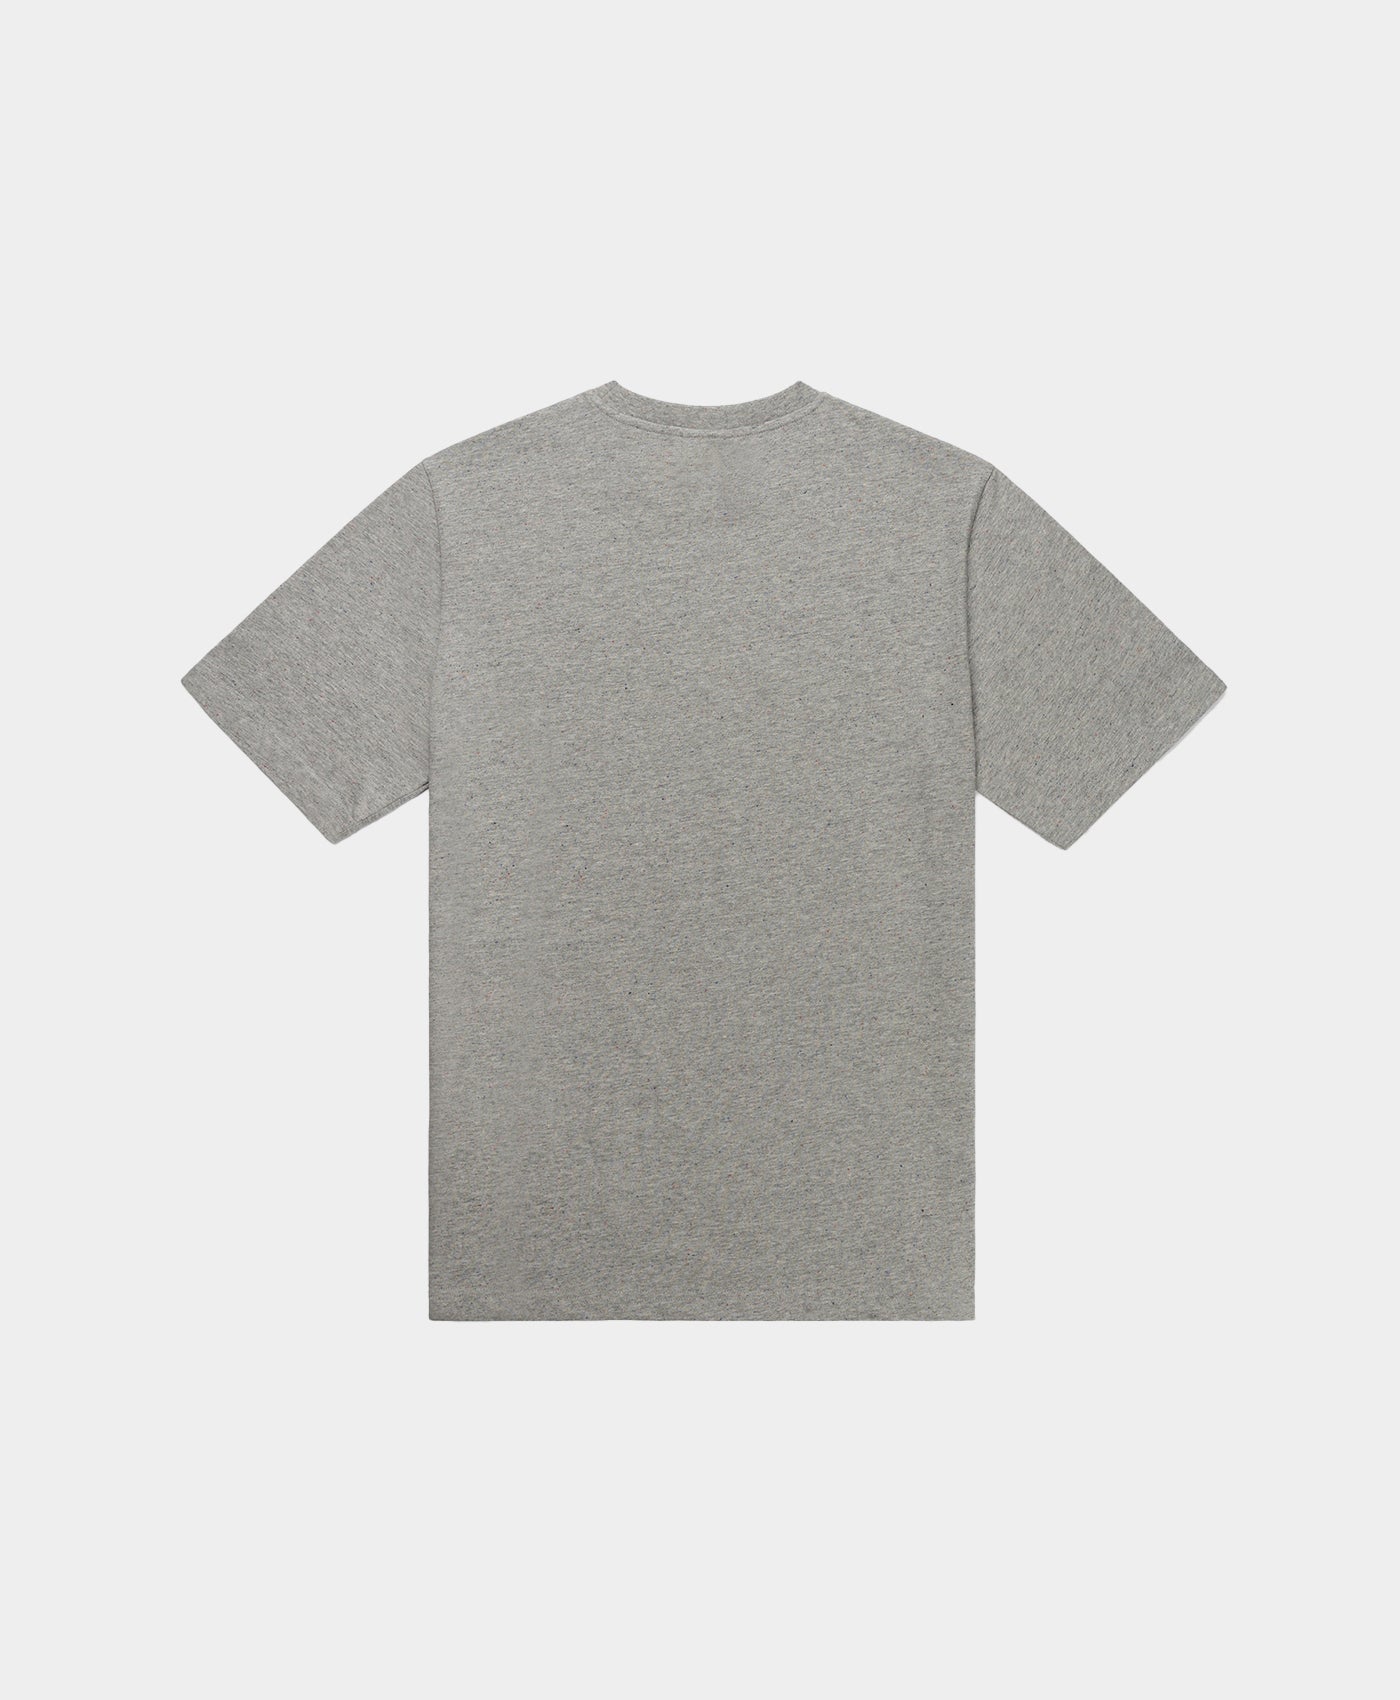 DP - Dark Grey Speckle Reild T-Shirt - Packshot - Rear